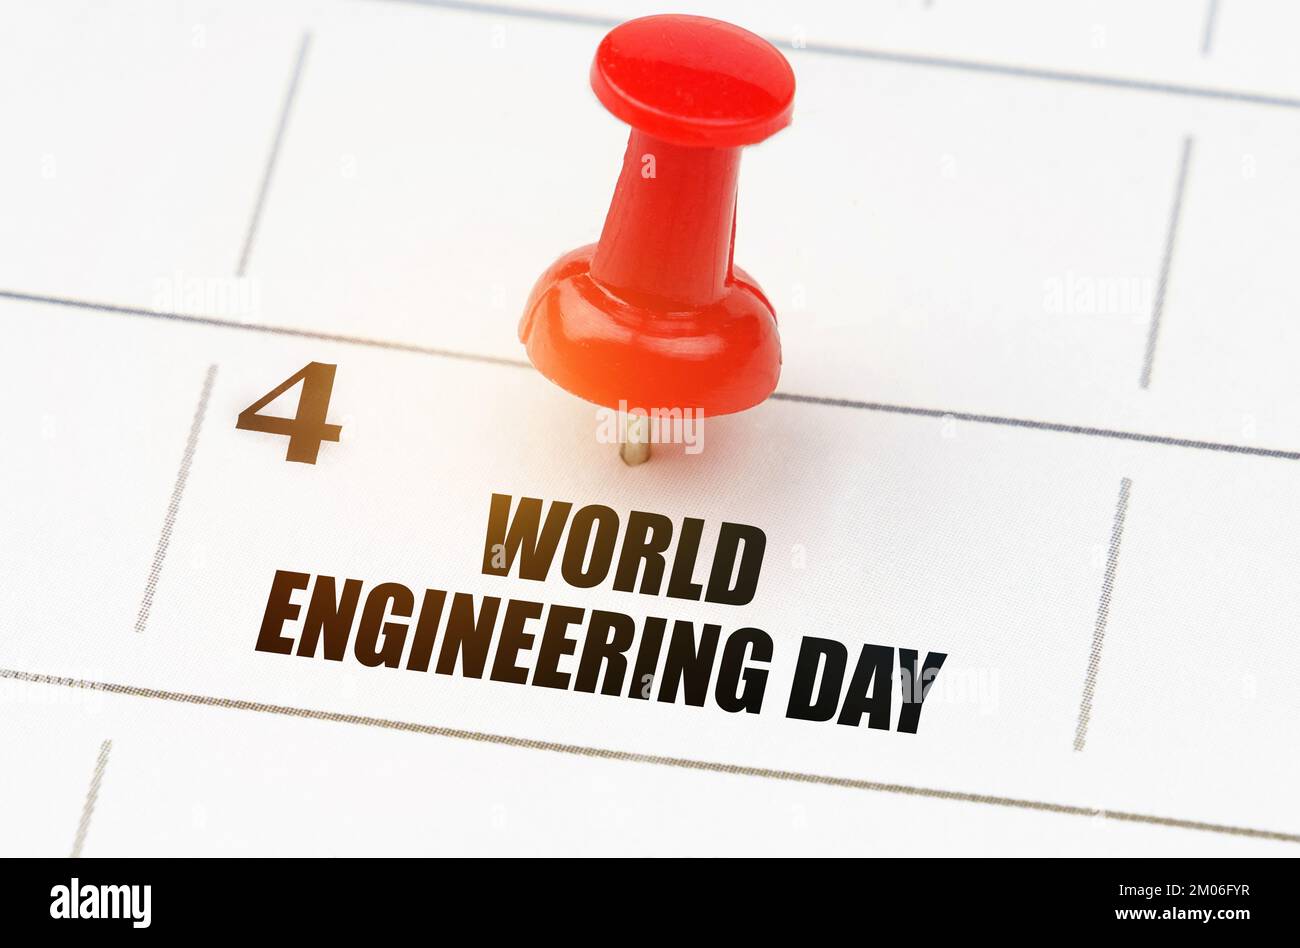 Internationale Feiertage. Im Kalenderraster Datum und Name des Feiertags - Weltingenieurstag Stockfoto